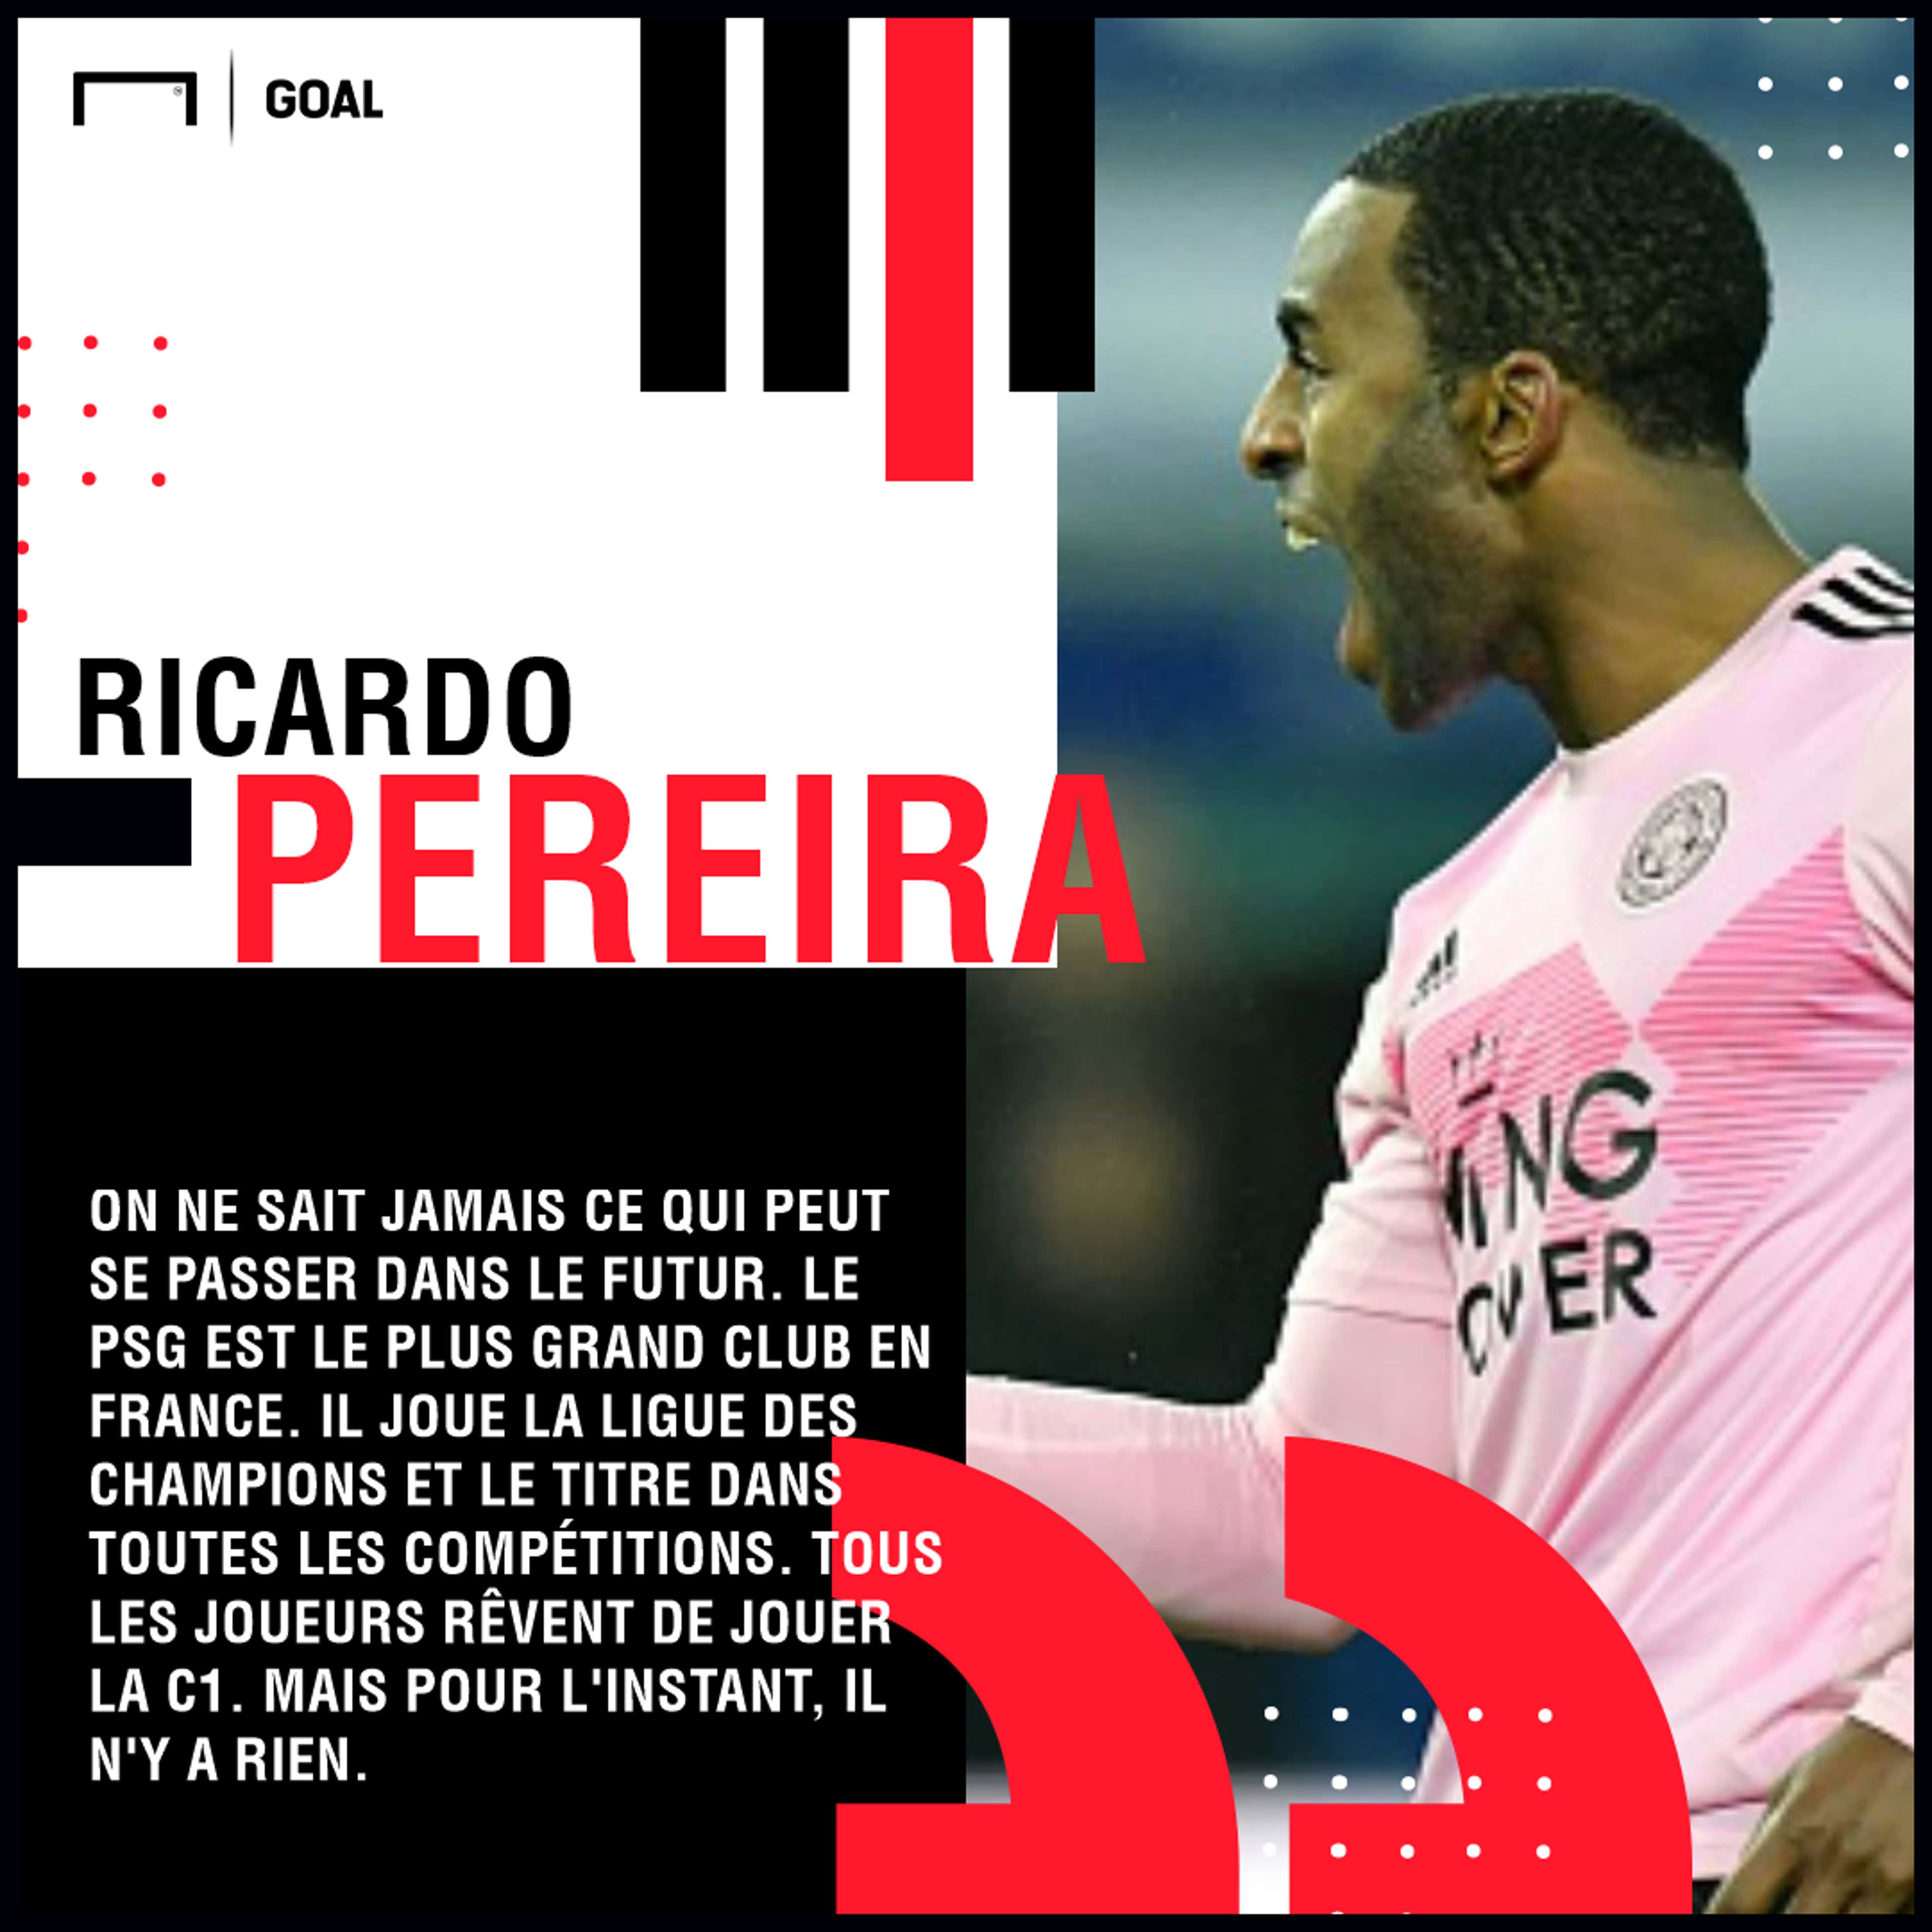 PS Ricardo Pereira